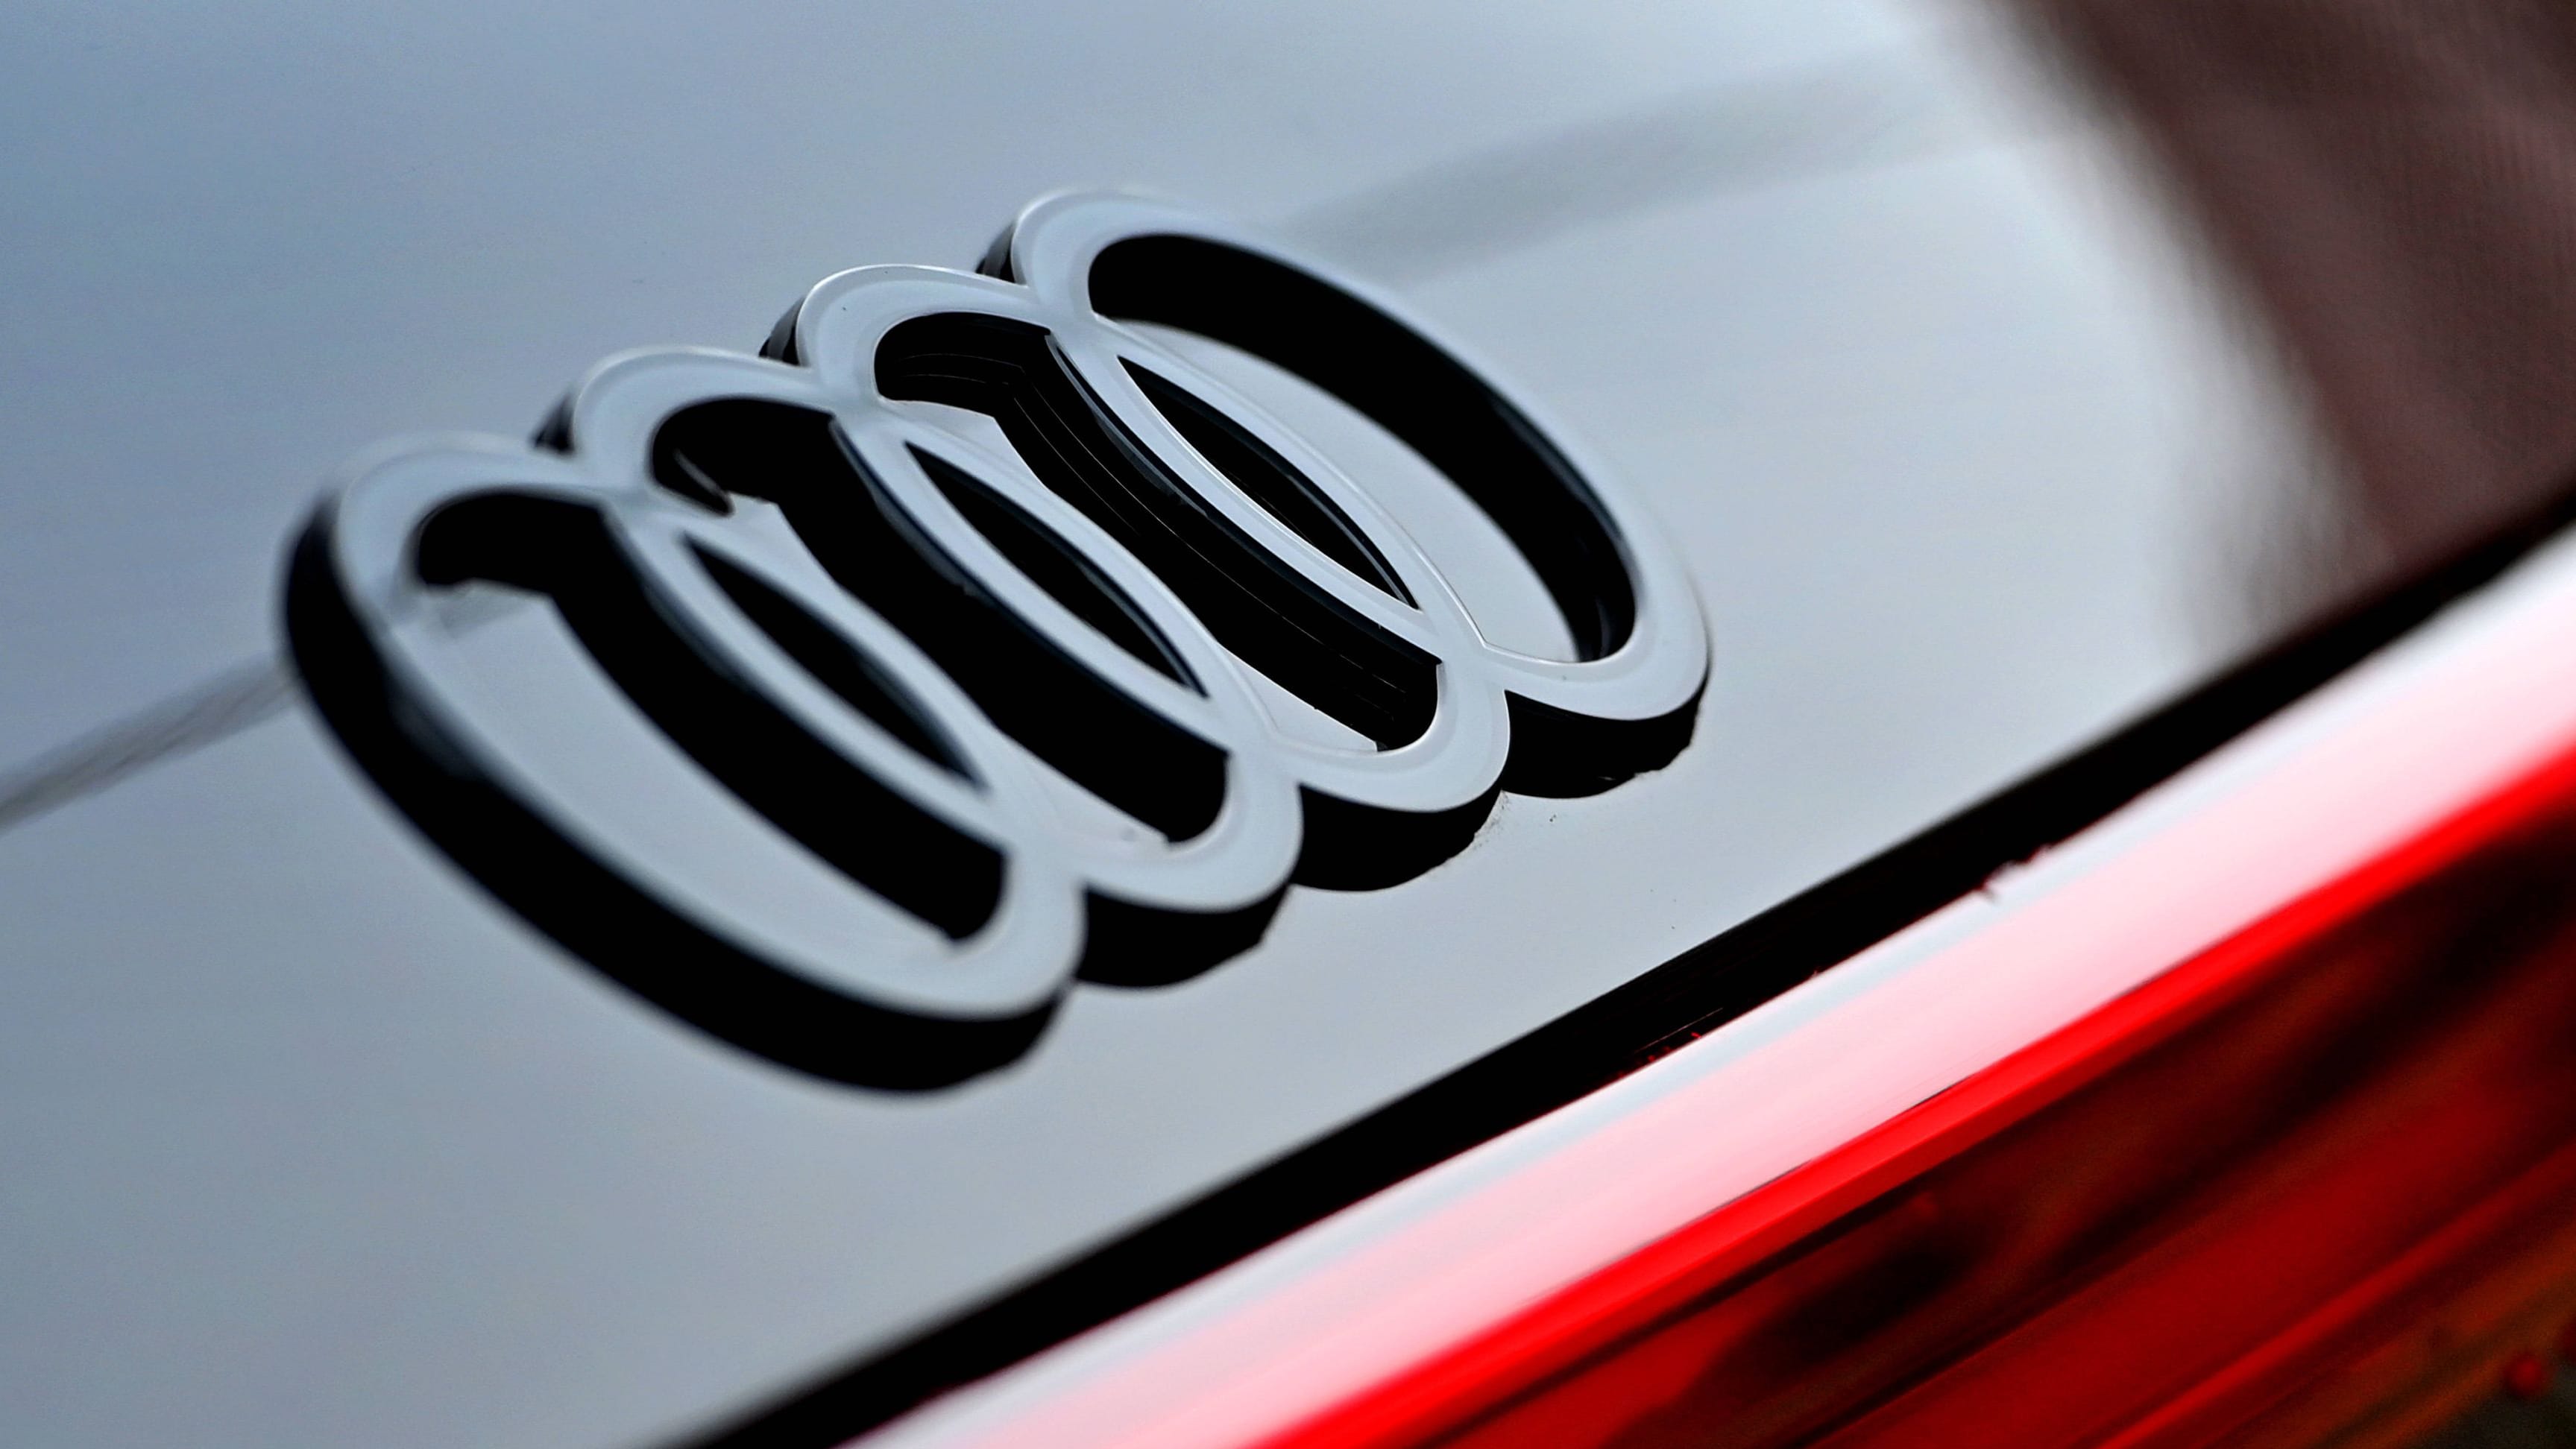 VW-Marke Audi: Ab 2033 keine Benziner und Diesel mehr, nur noch E-Autos